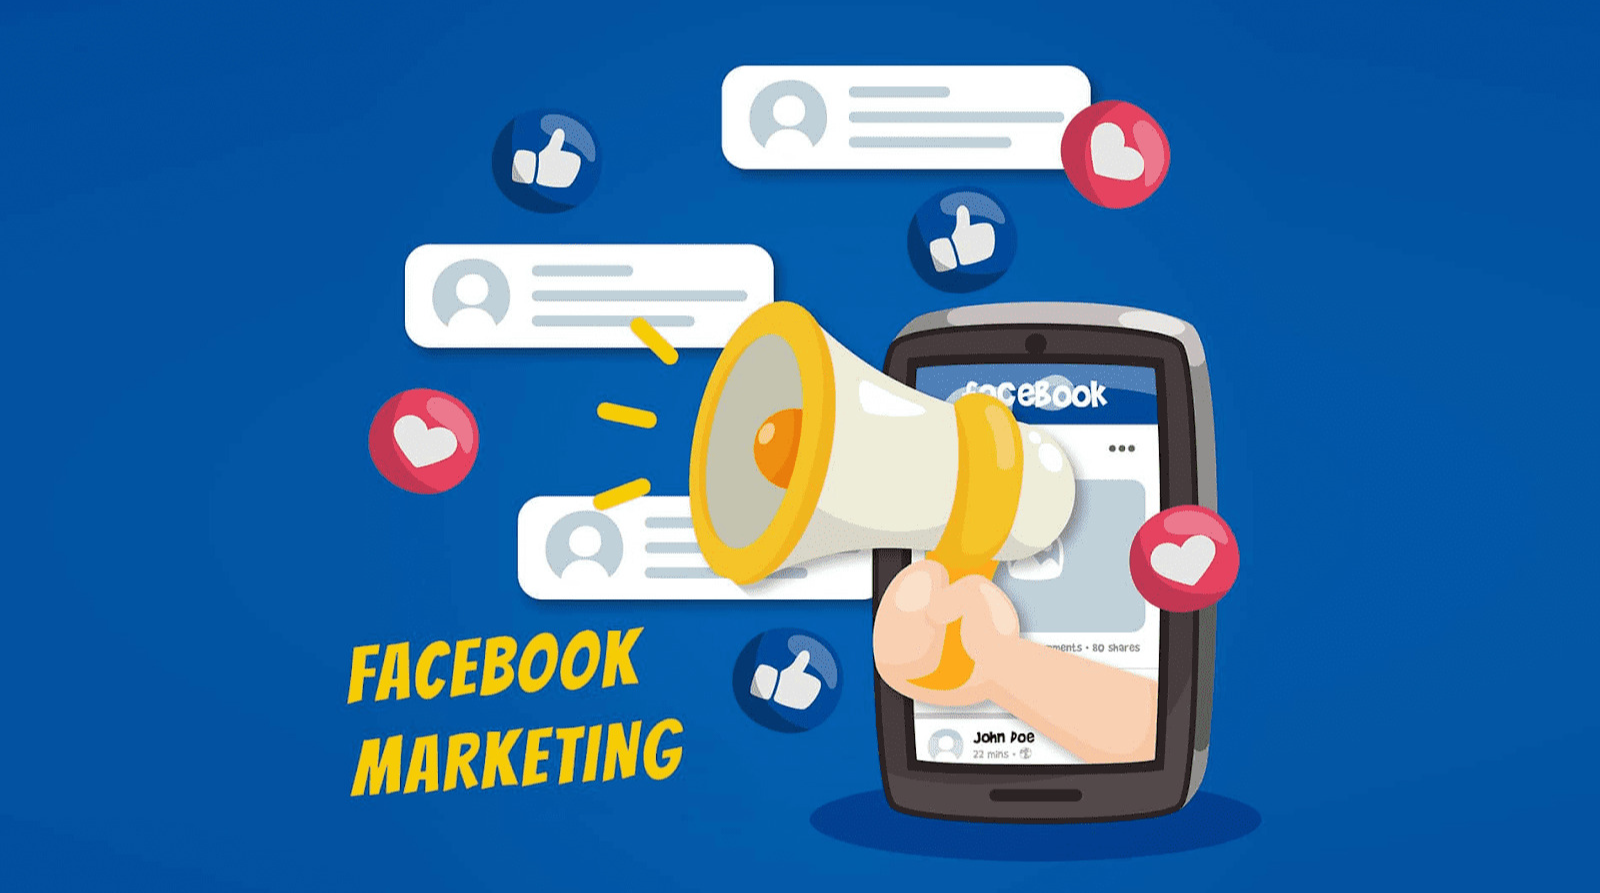 Facebook Marketing là gì và cách làm Facebook Marketing giỏi